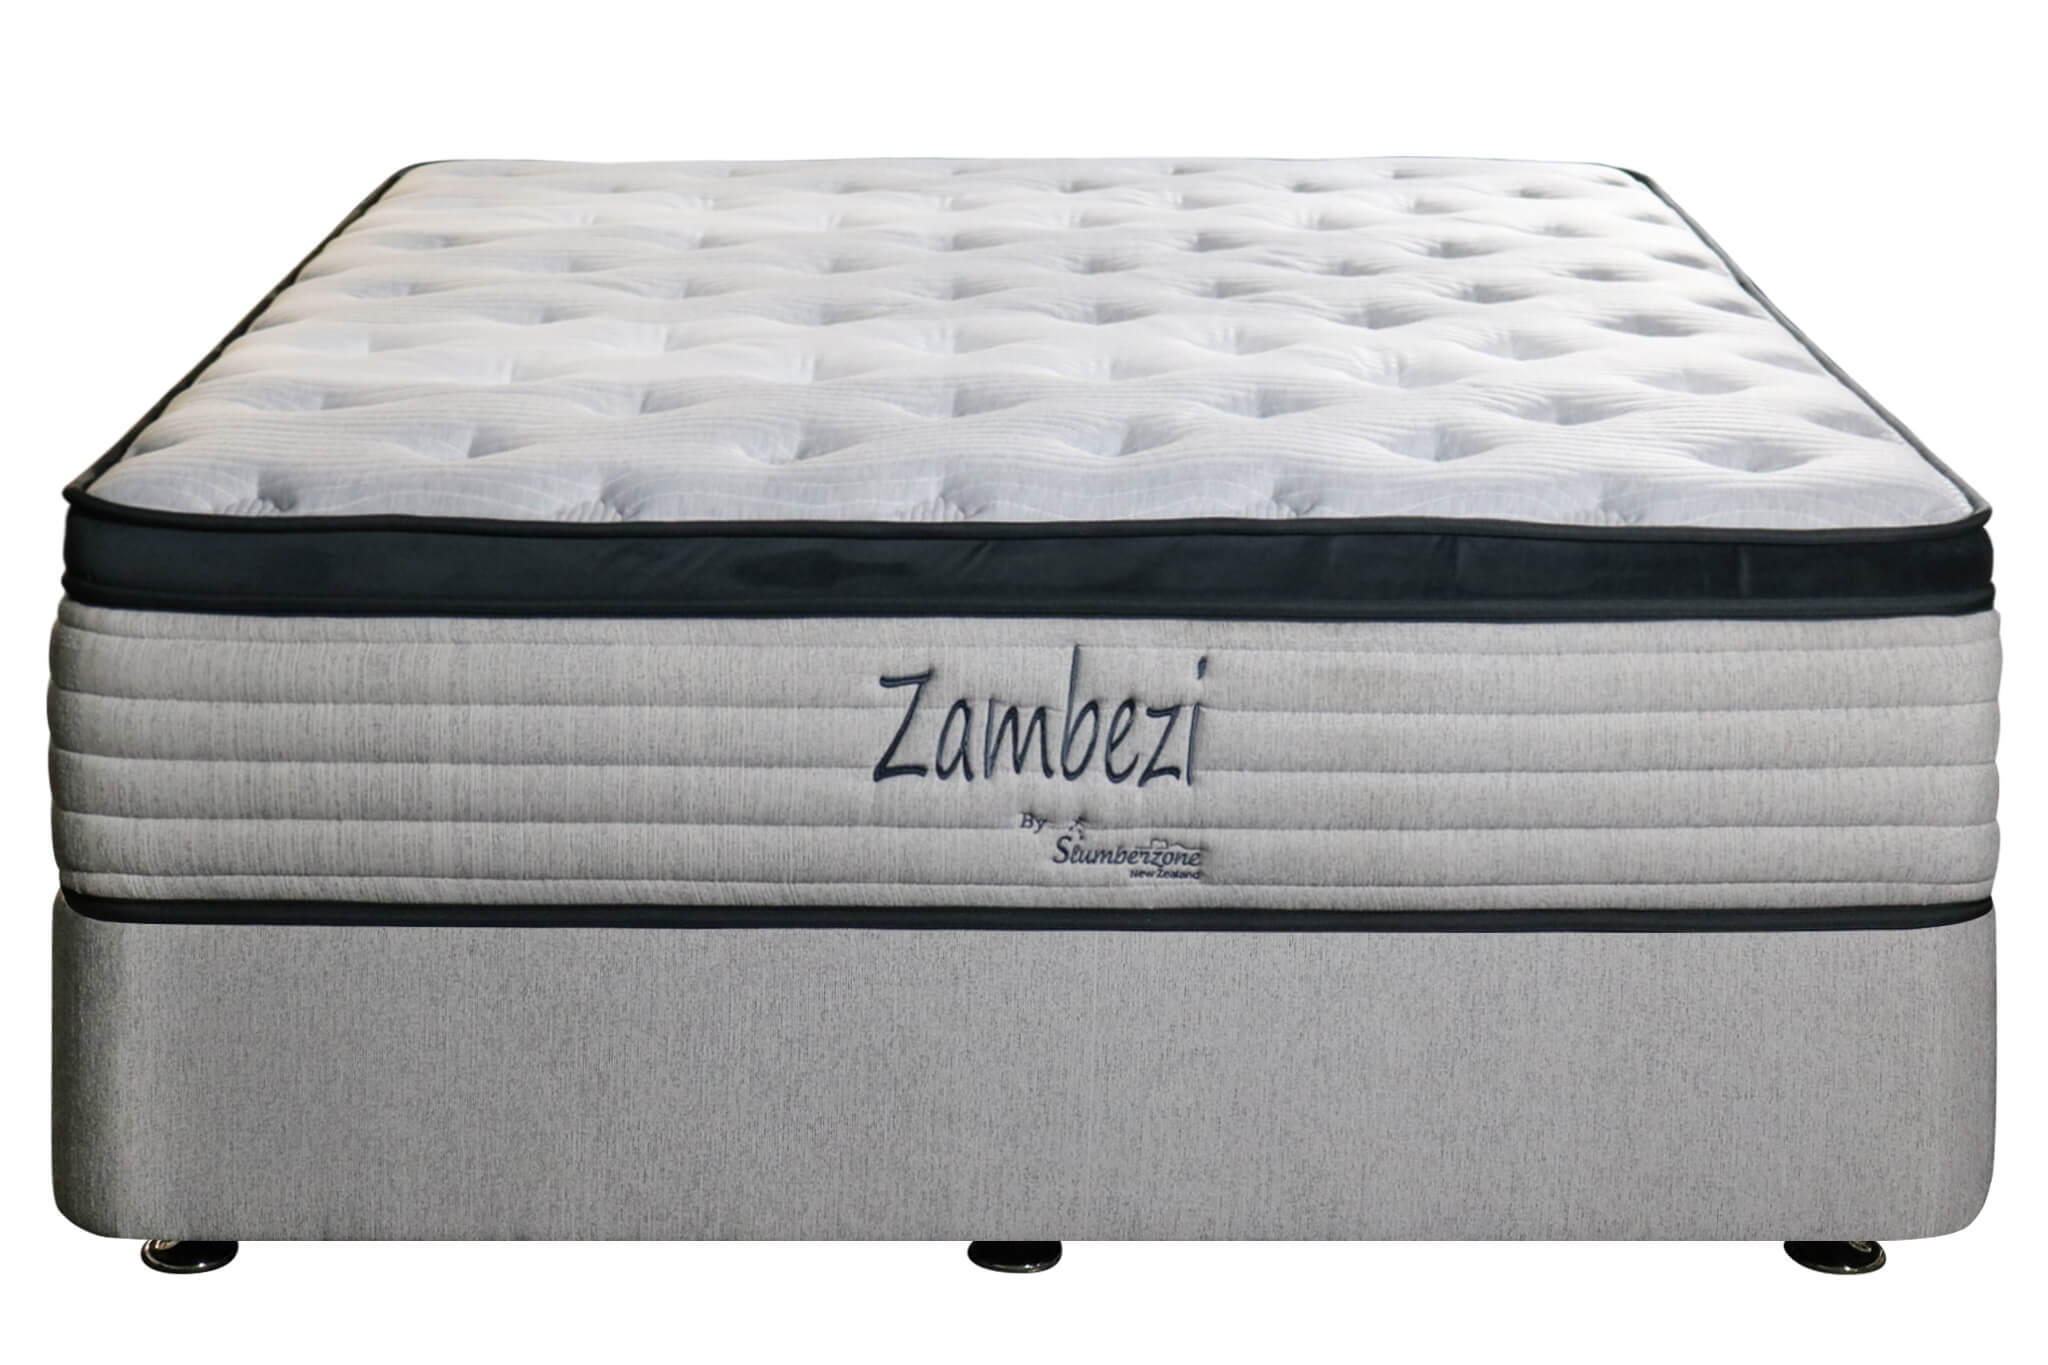 Zambezi – Double Bed